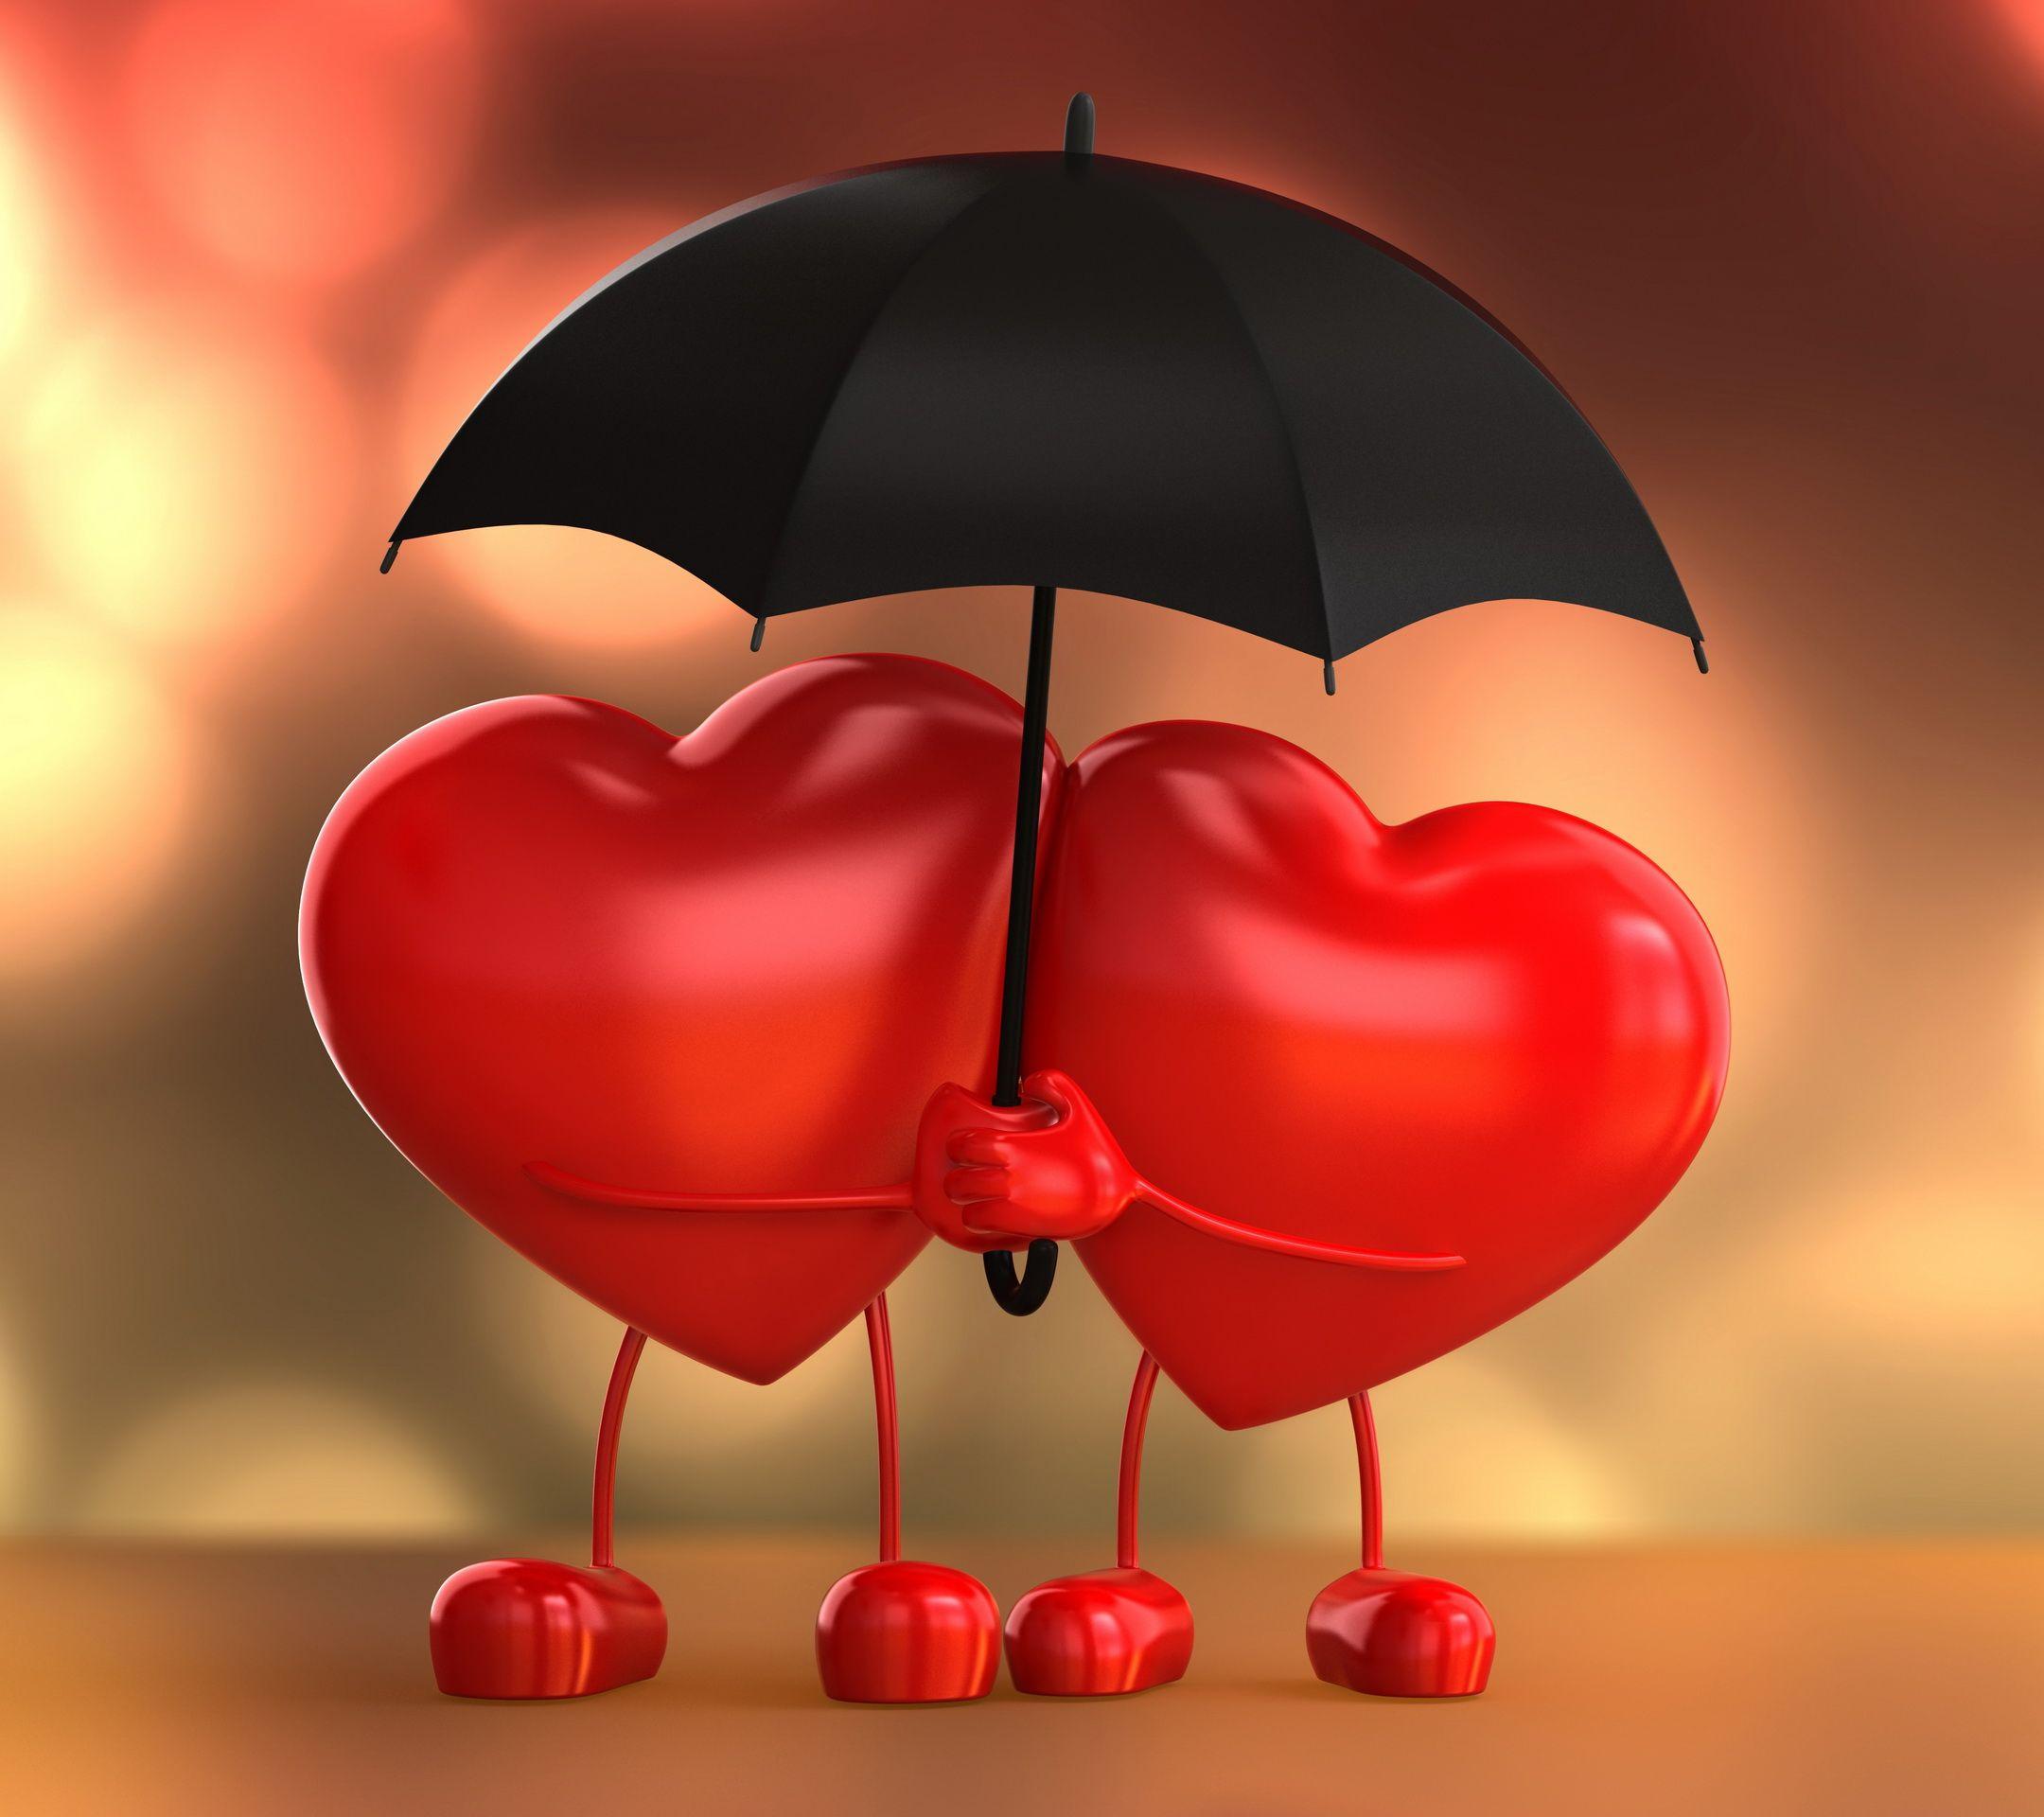 couple hearts. Heart wallpaper, Heart image, Photo heart